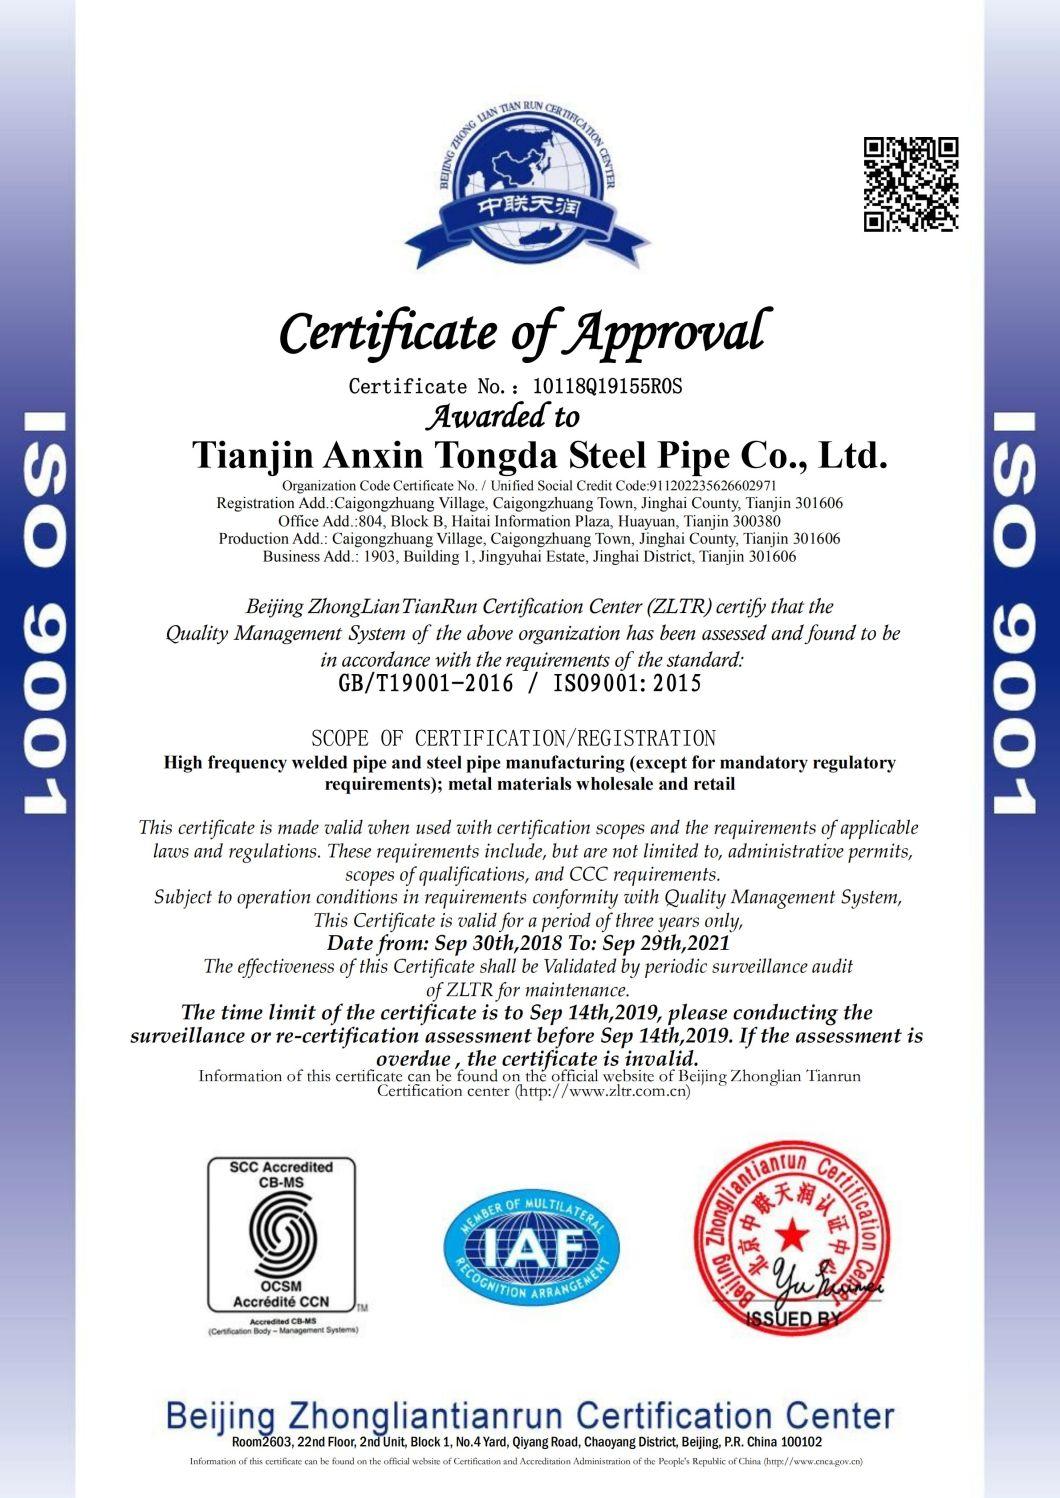 Axtd Steel Group! Q355/Q345 48*1.8mm 60*1.8mm Galvanized Surface Round Steel Pipe